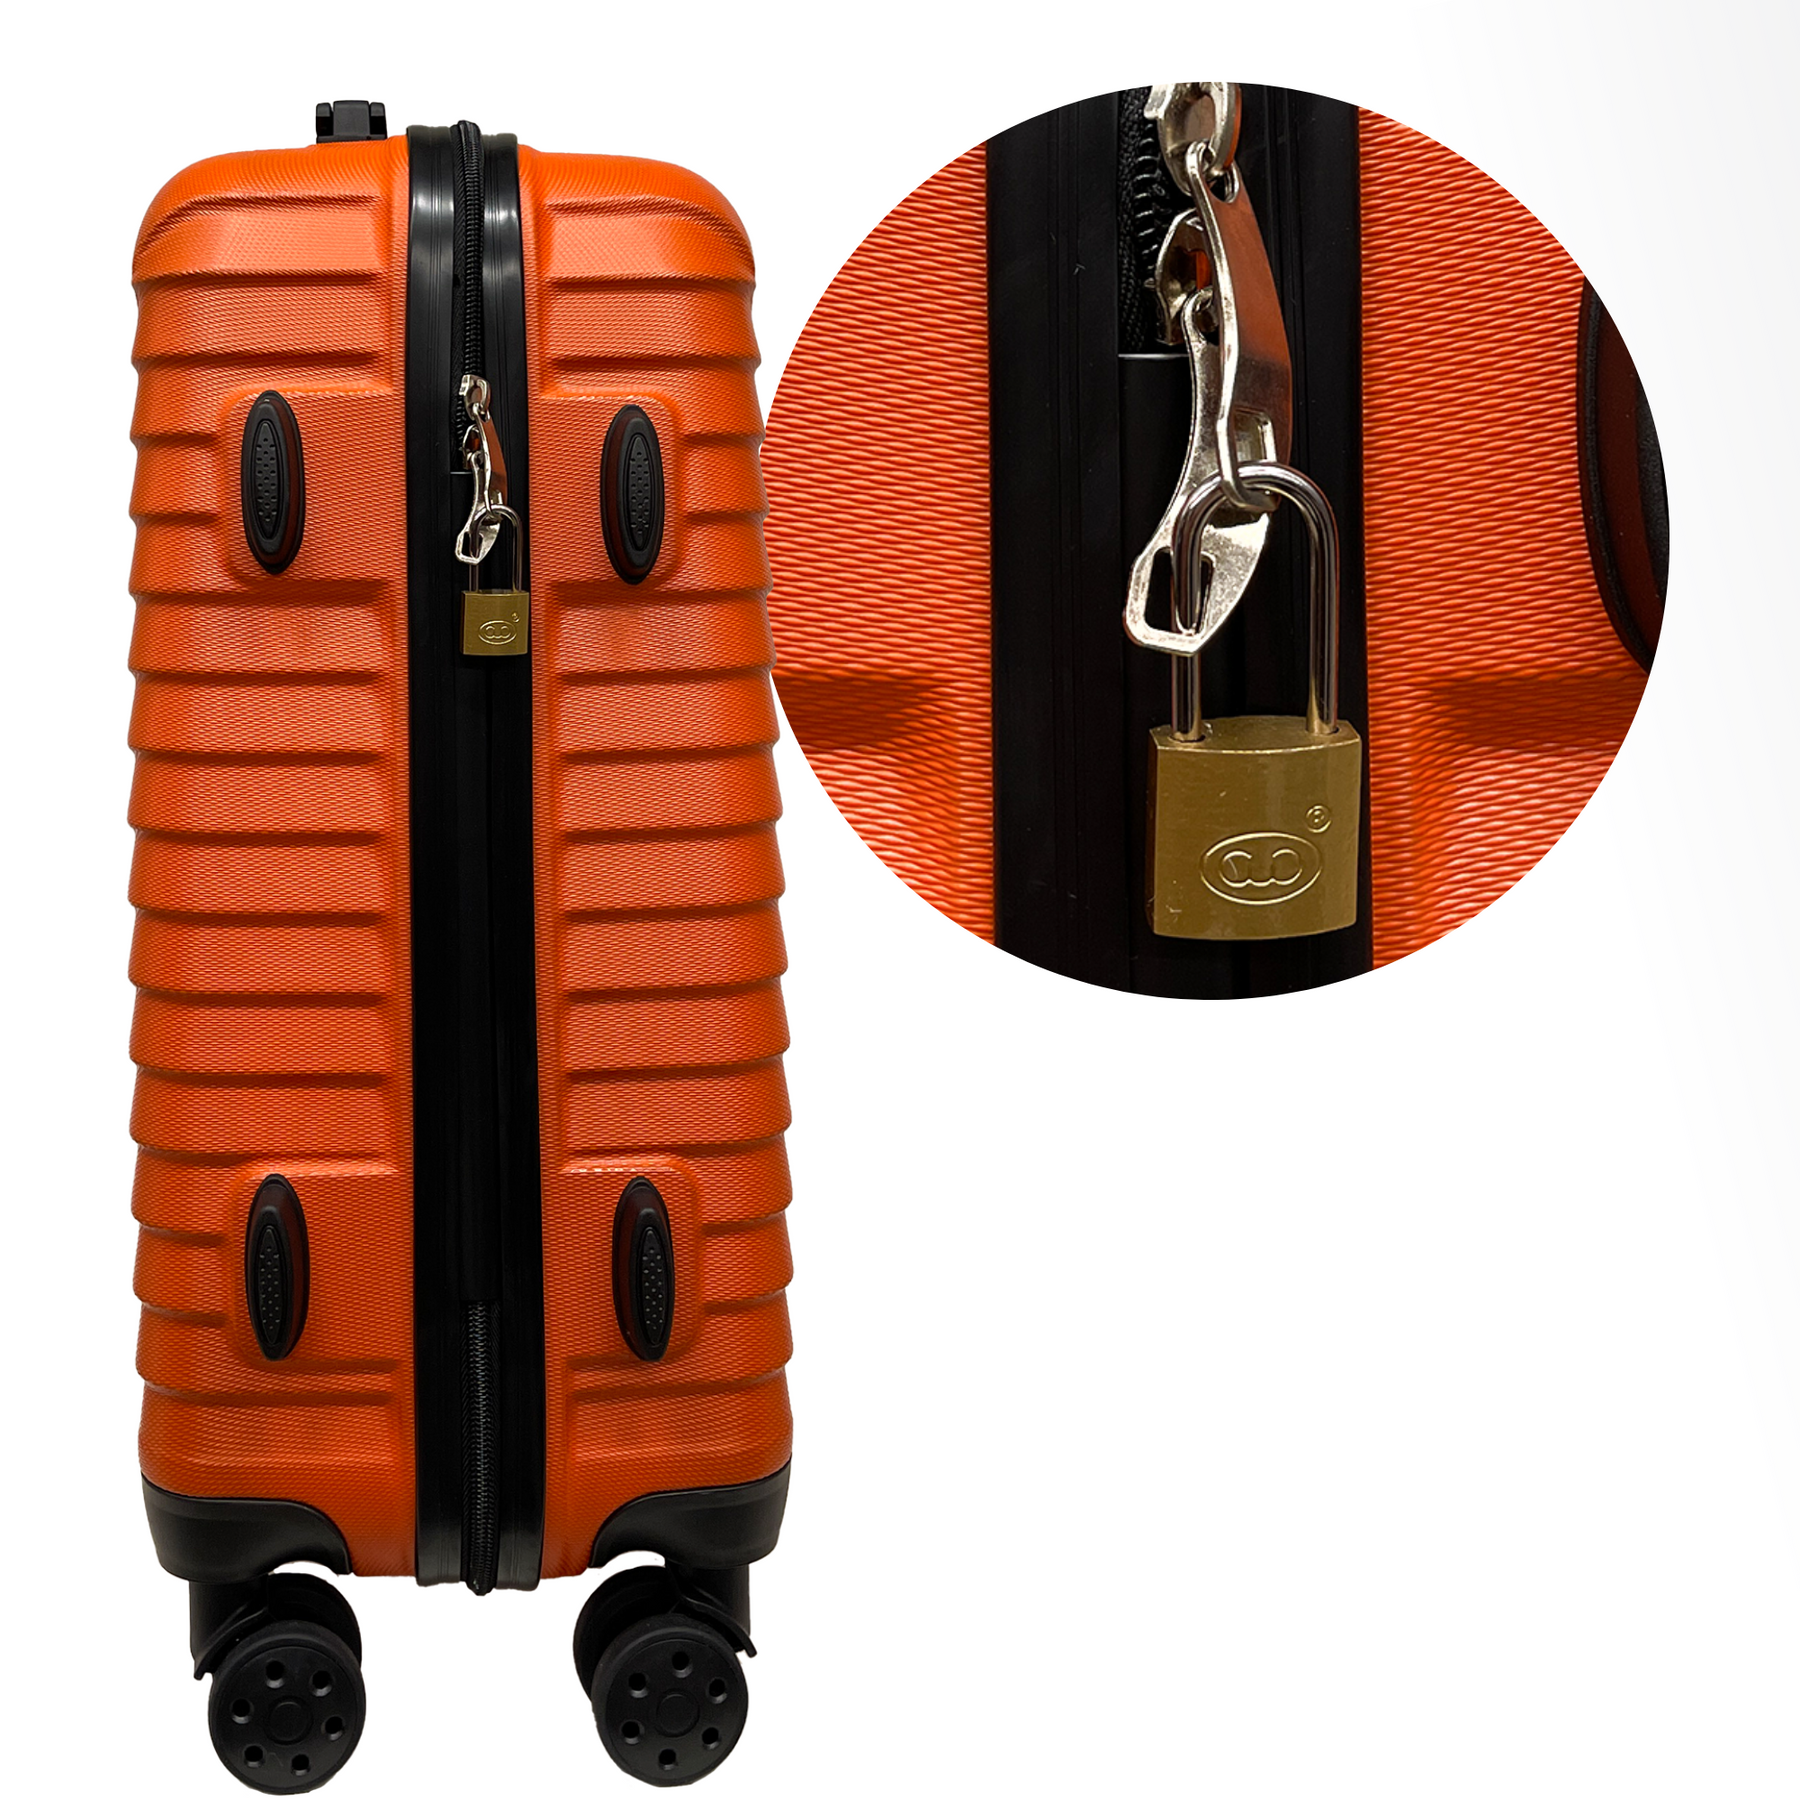 Închizătoare cu zăvor lung de 20 mm și 2 chei - Siguranță pentru valiză, bagaje, geantă de călătorie și rucsac